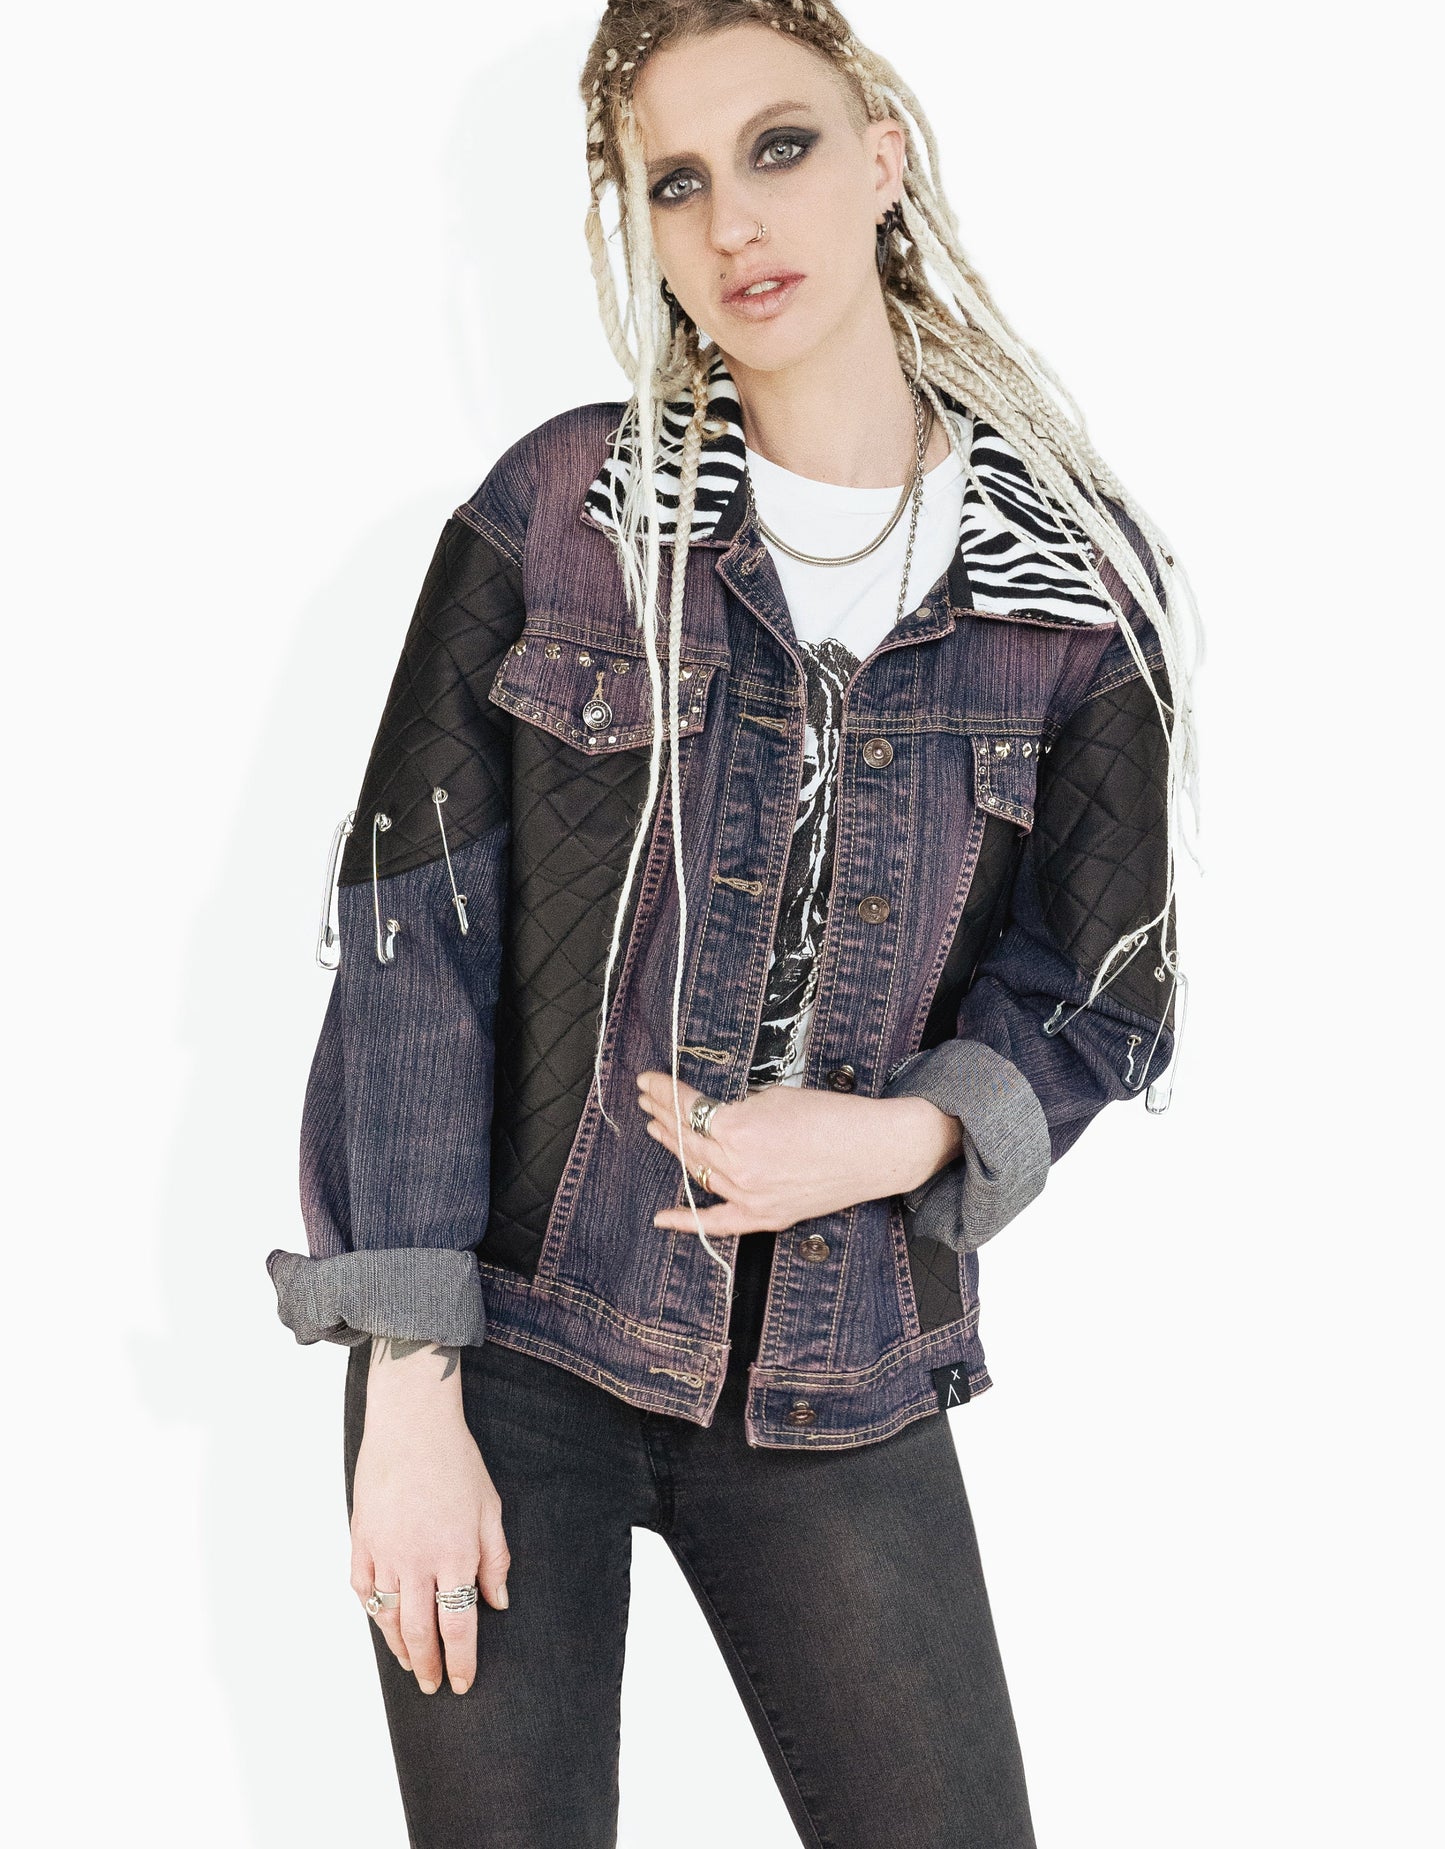 custom jean jacket skeleton jacket battle jacket goth jacket punk jacket | oversized jacket leather jacket | studded denim jacket | size XL